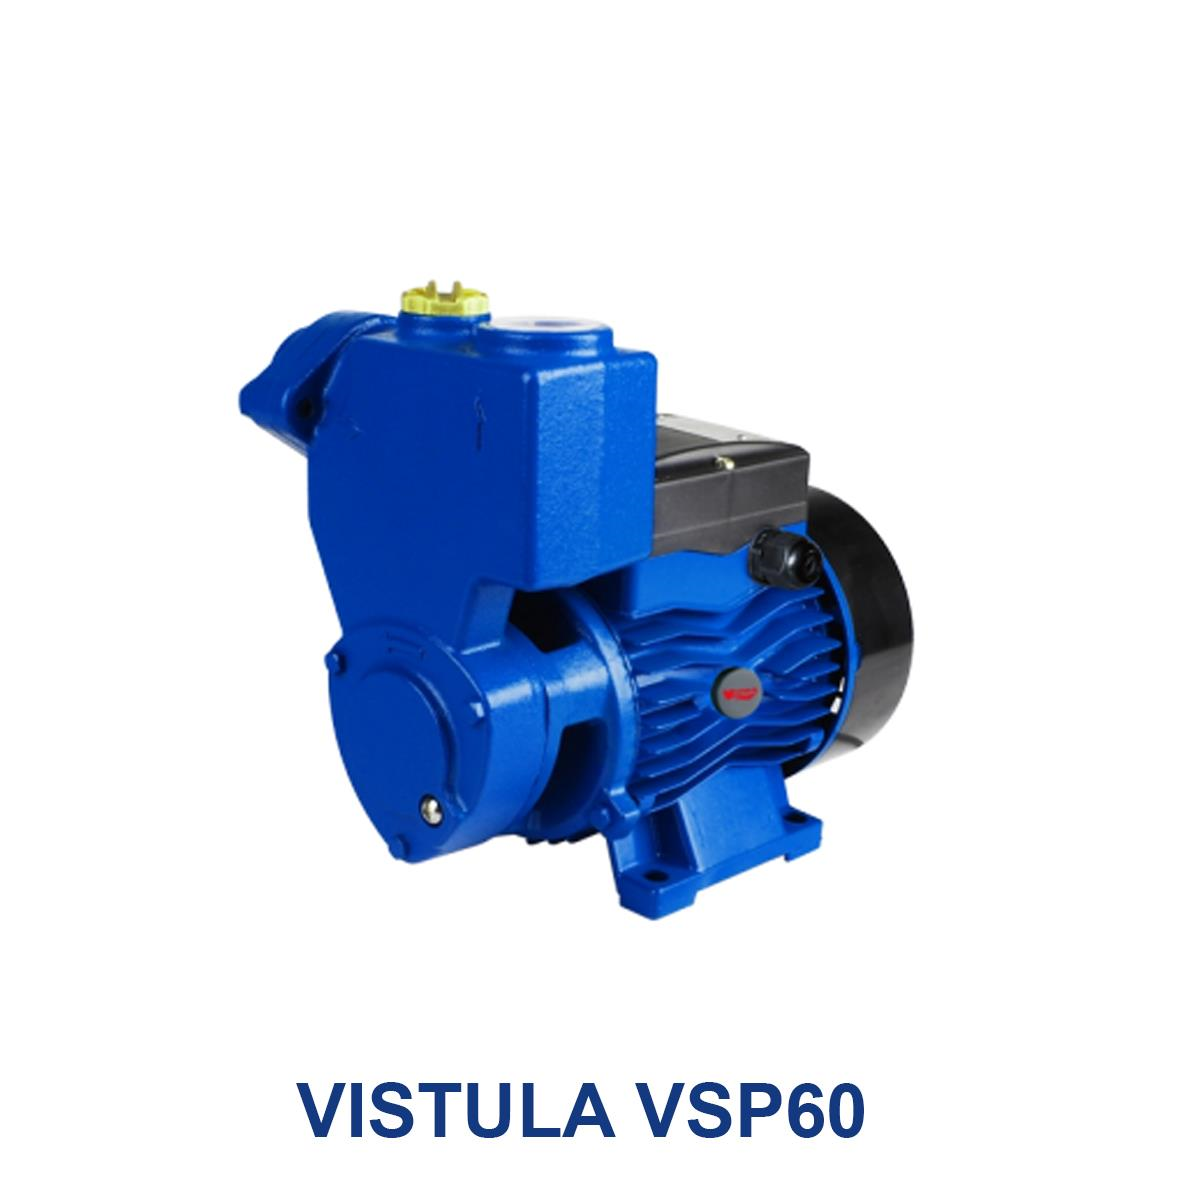 VISTULA-VSP60